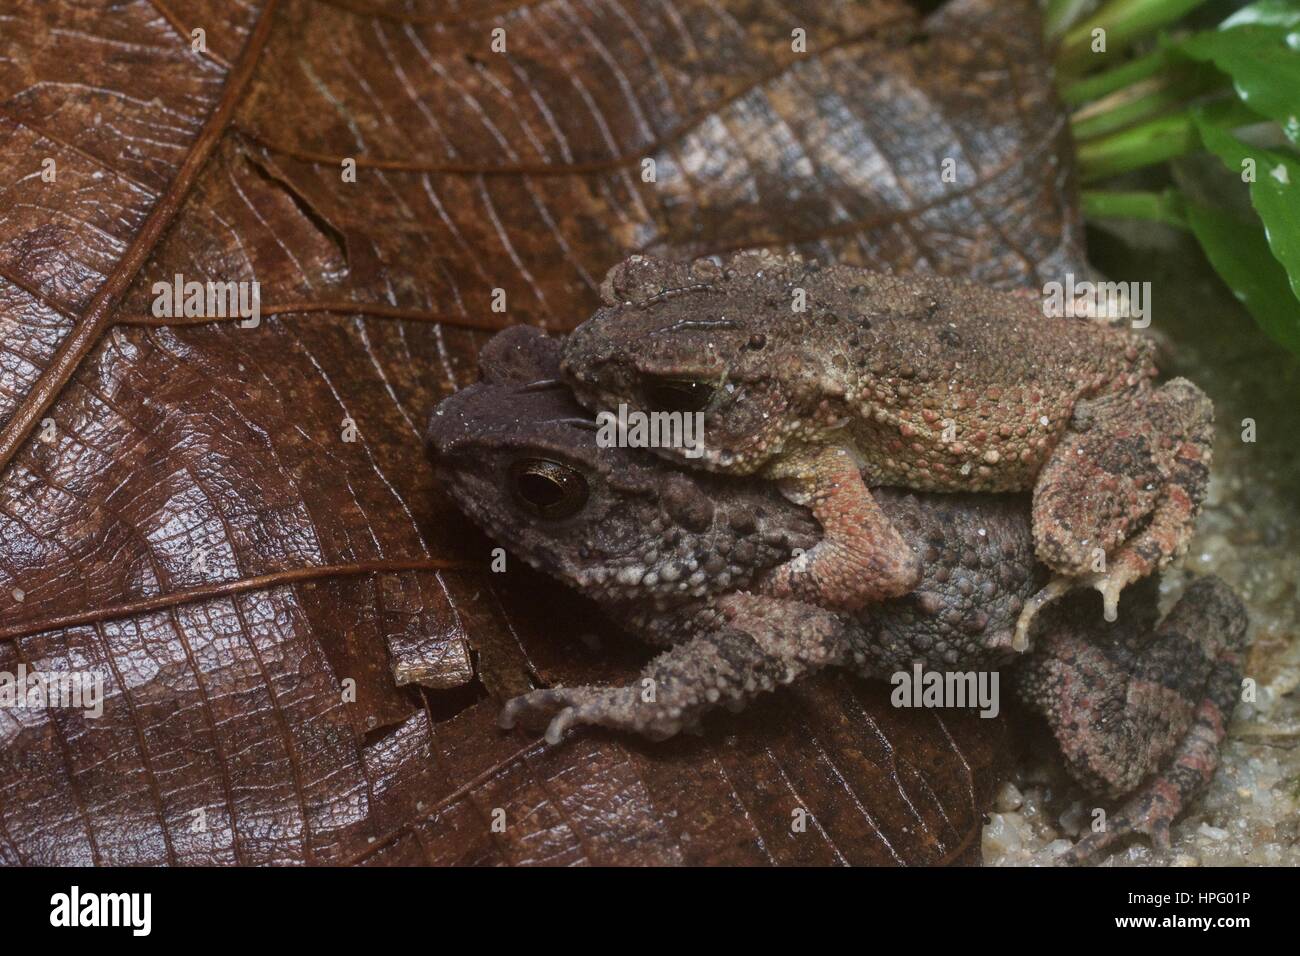 A pair of Lesser Stream Toads (Ingerophrynus parvus) on a leaf in Ulu Semenyih, Selangor, Malaysia Stock Photo